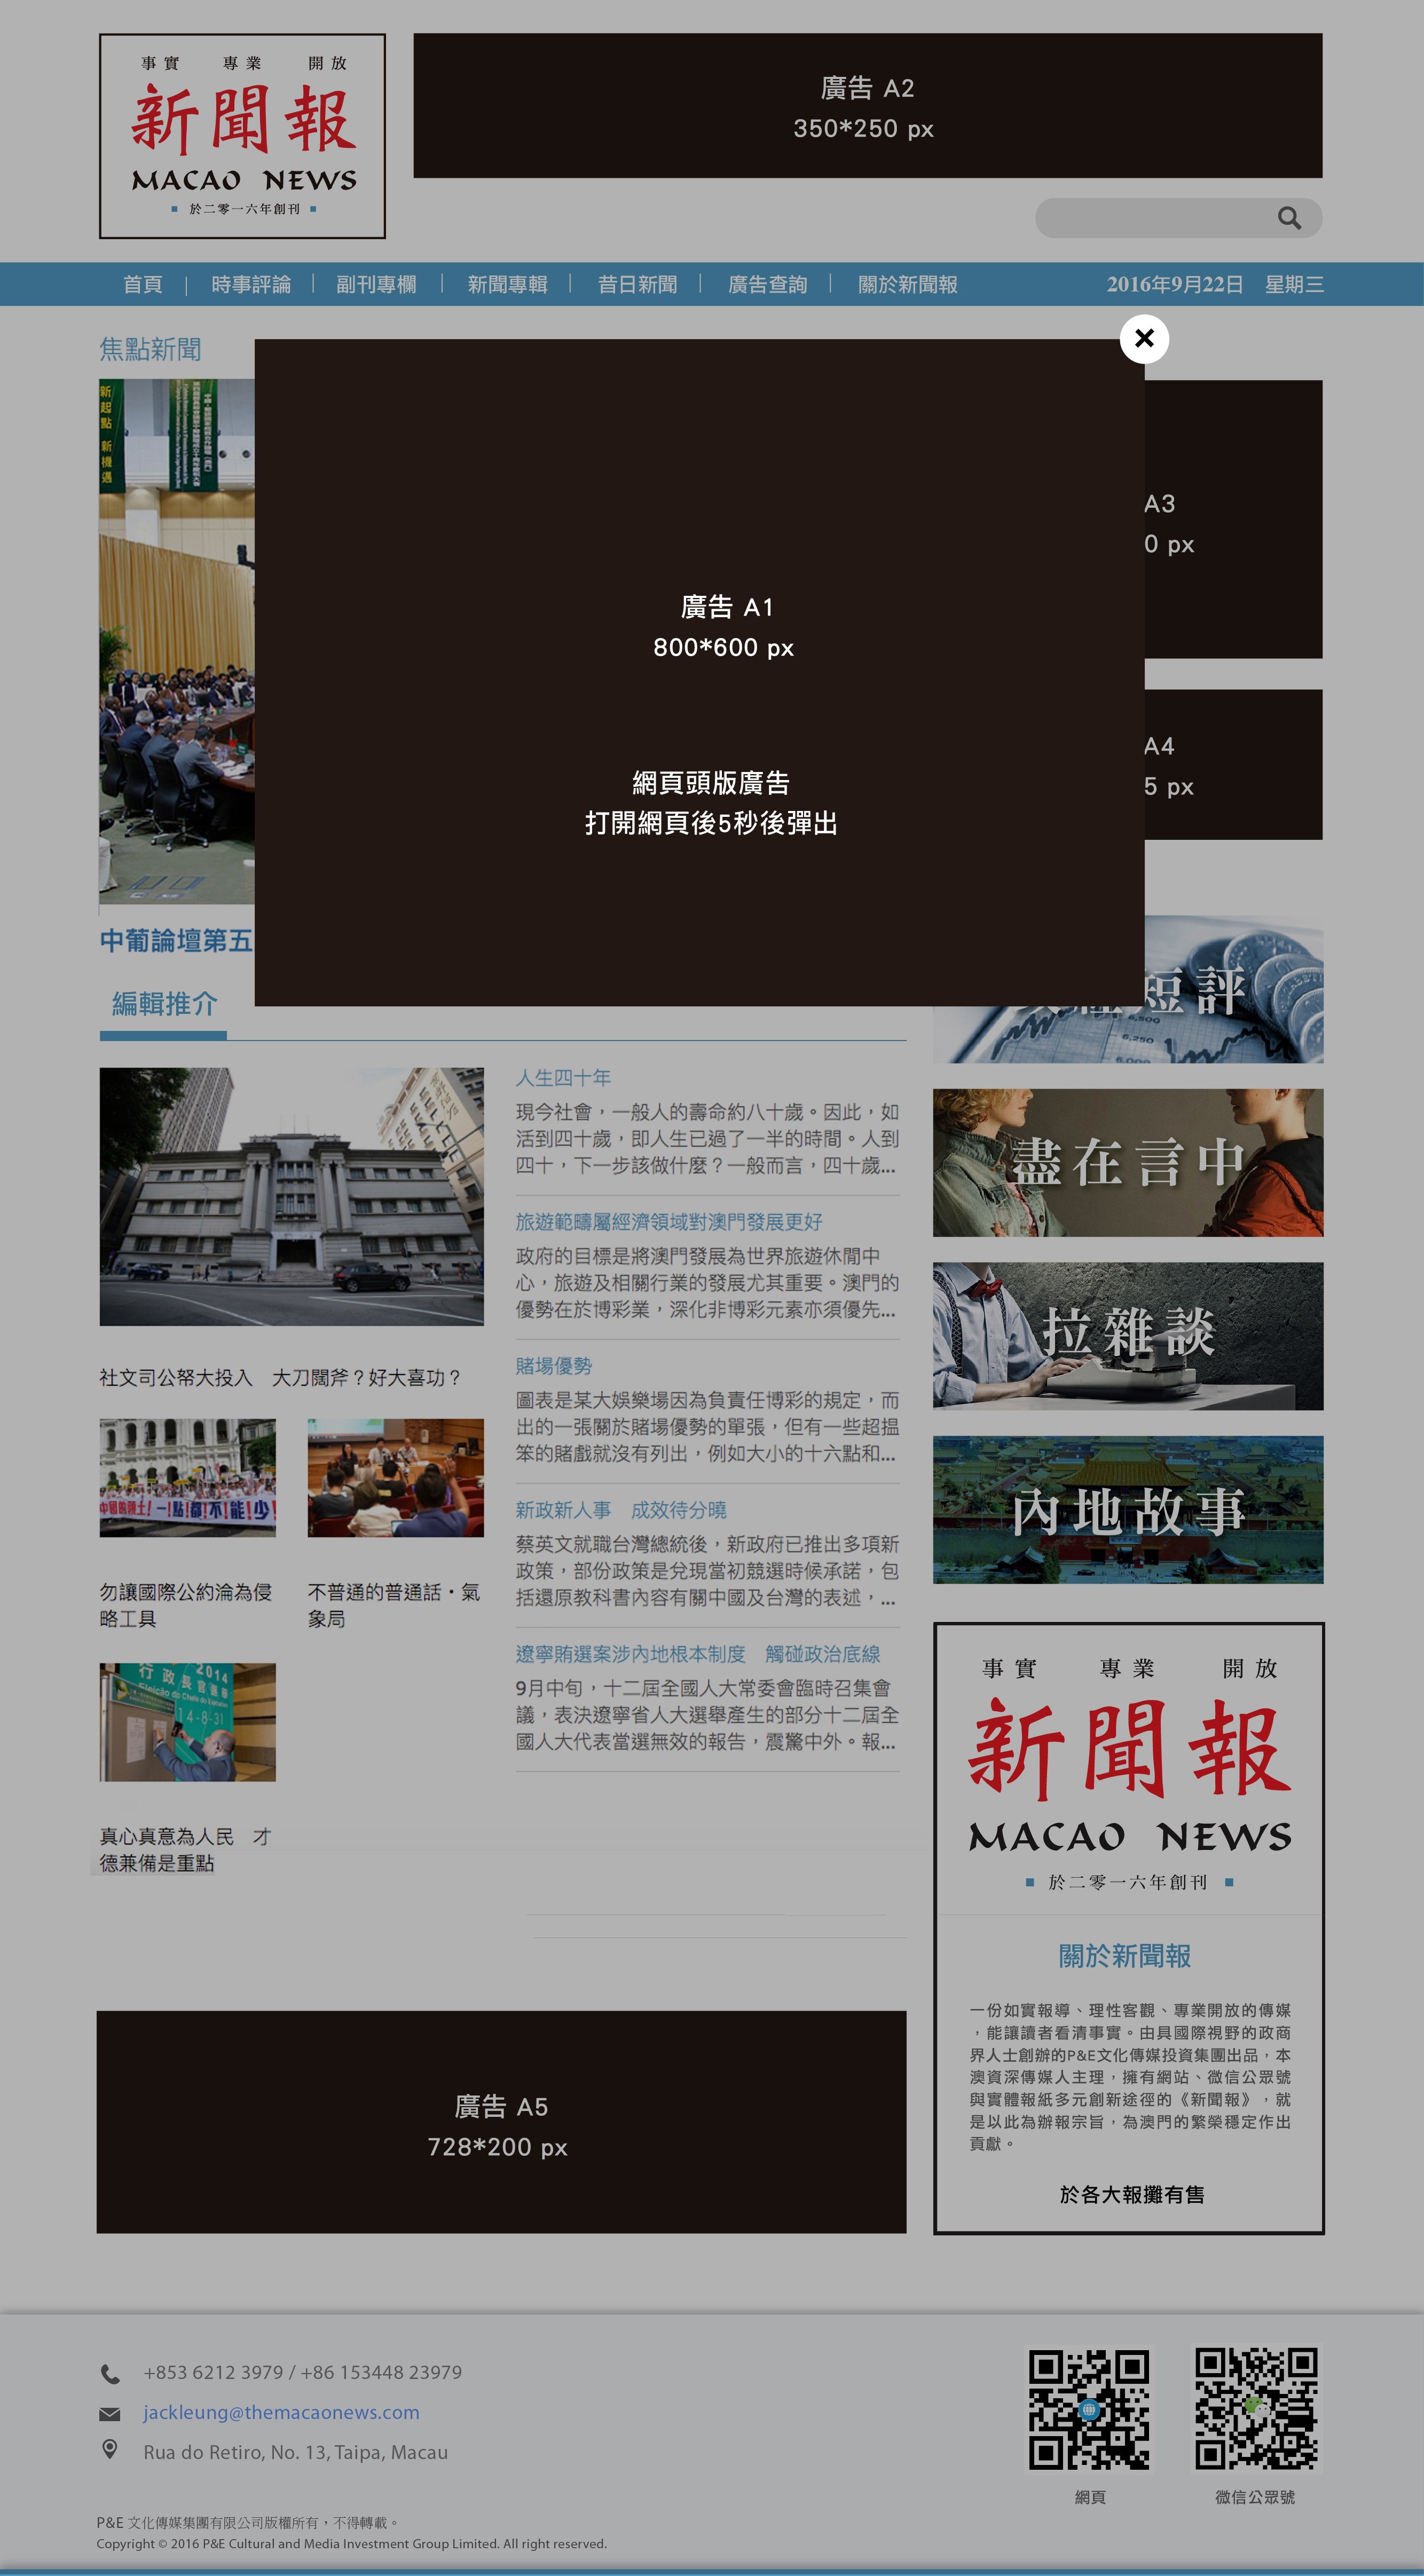 Macao News Website v3